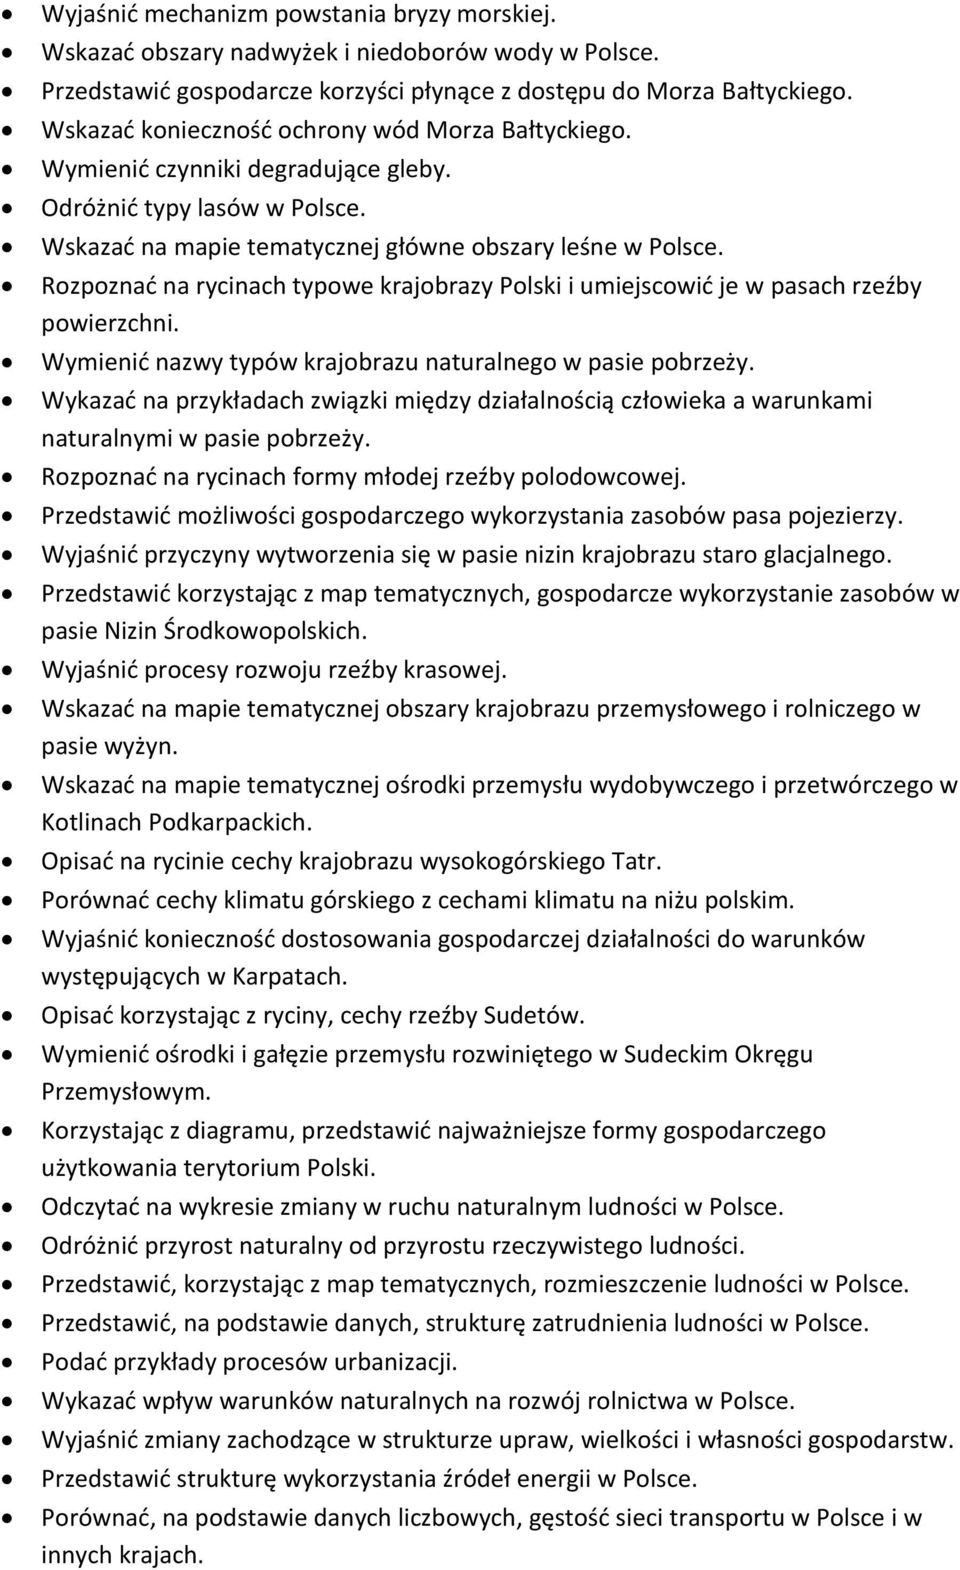 Odróżnid typy lasów w Wskazad na mapie tematycznej główne obszary leśne w Rozpoznad na rycinach typowe krajobrazy Polski i umiejscowid je w pasach rzeźby powierzchni.